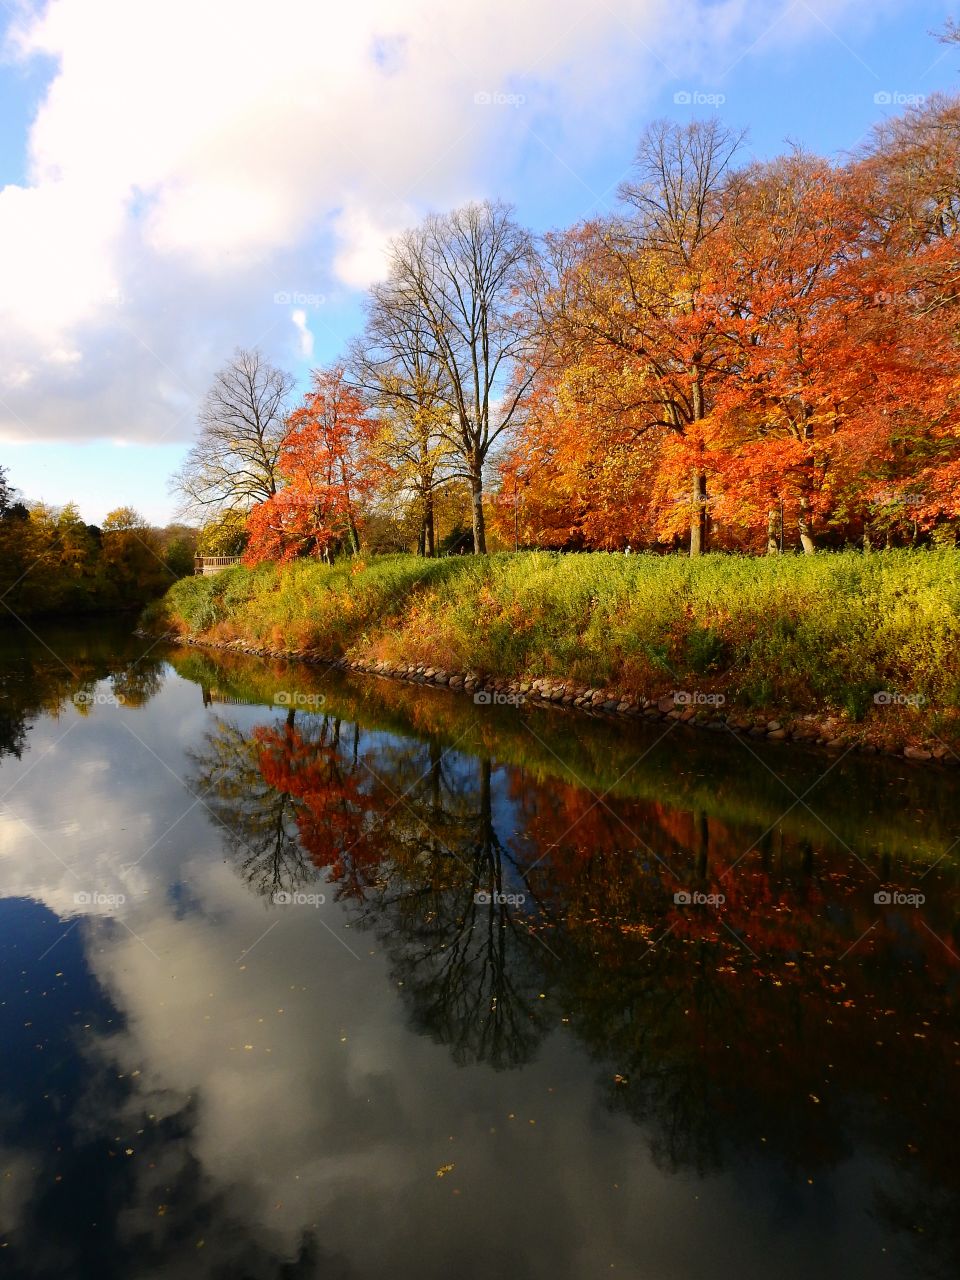 Fall reflection

